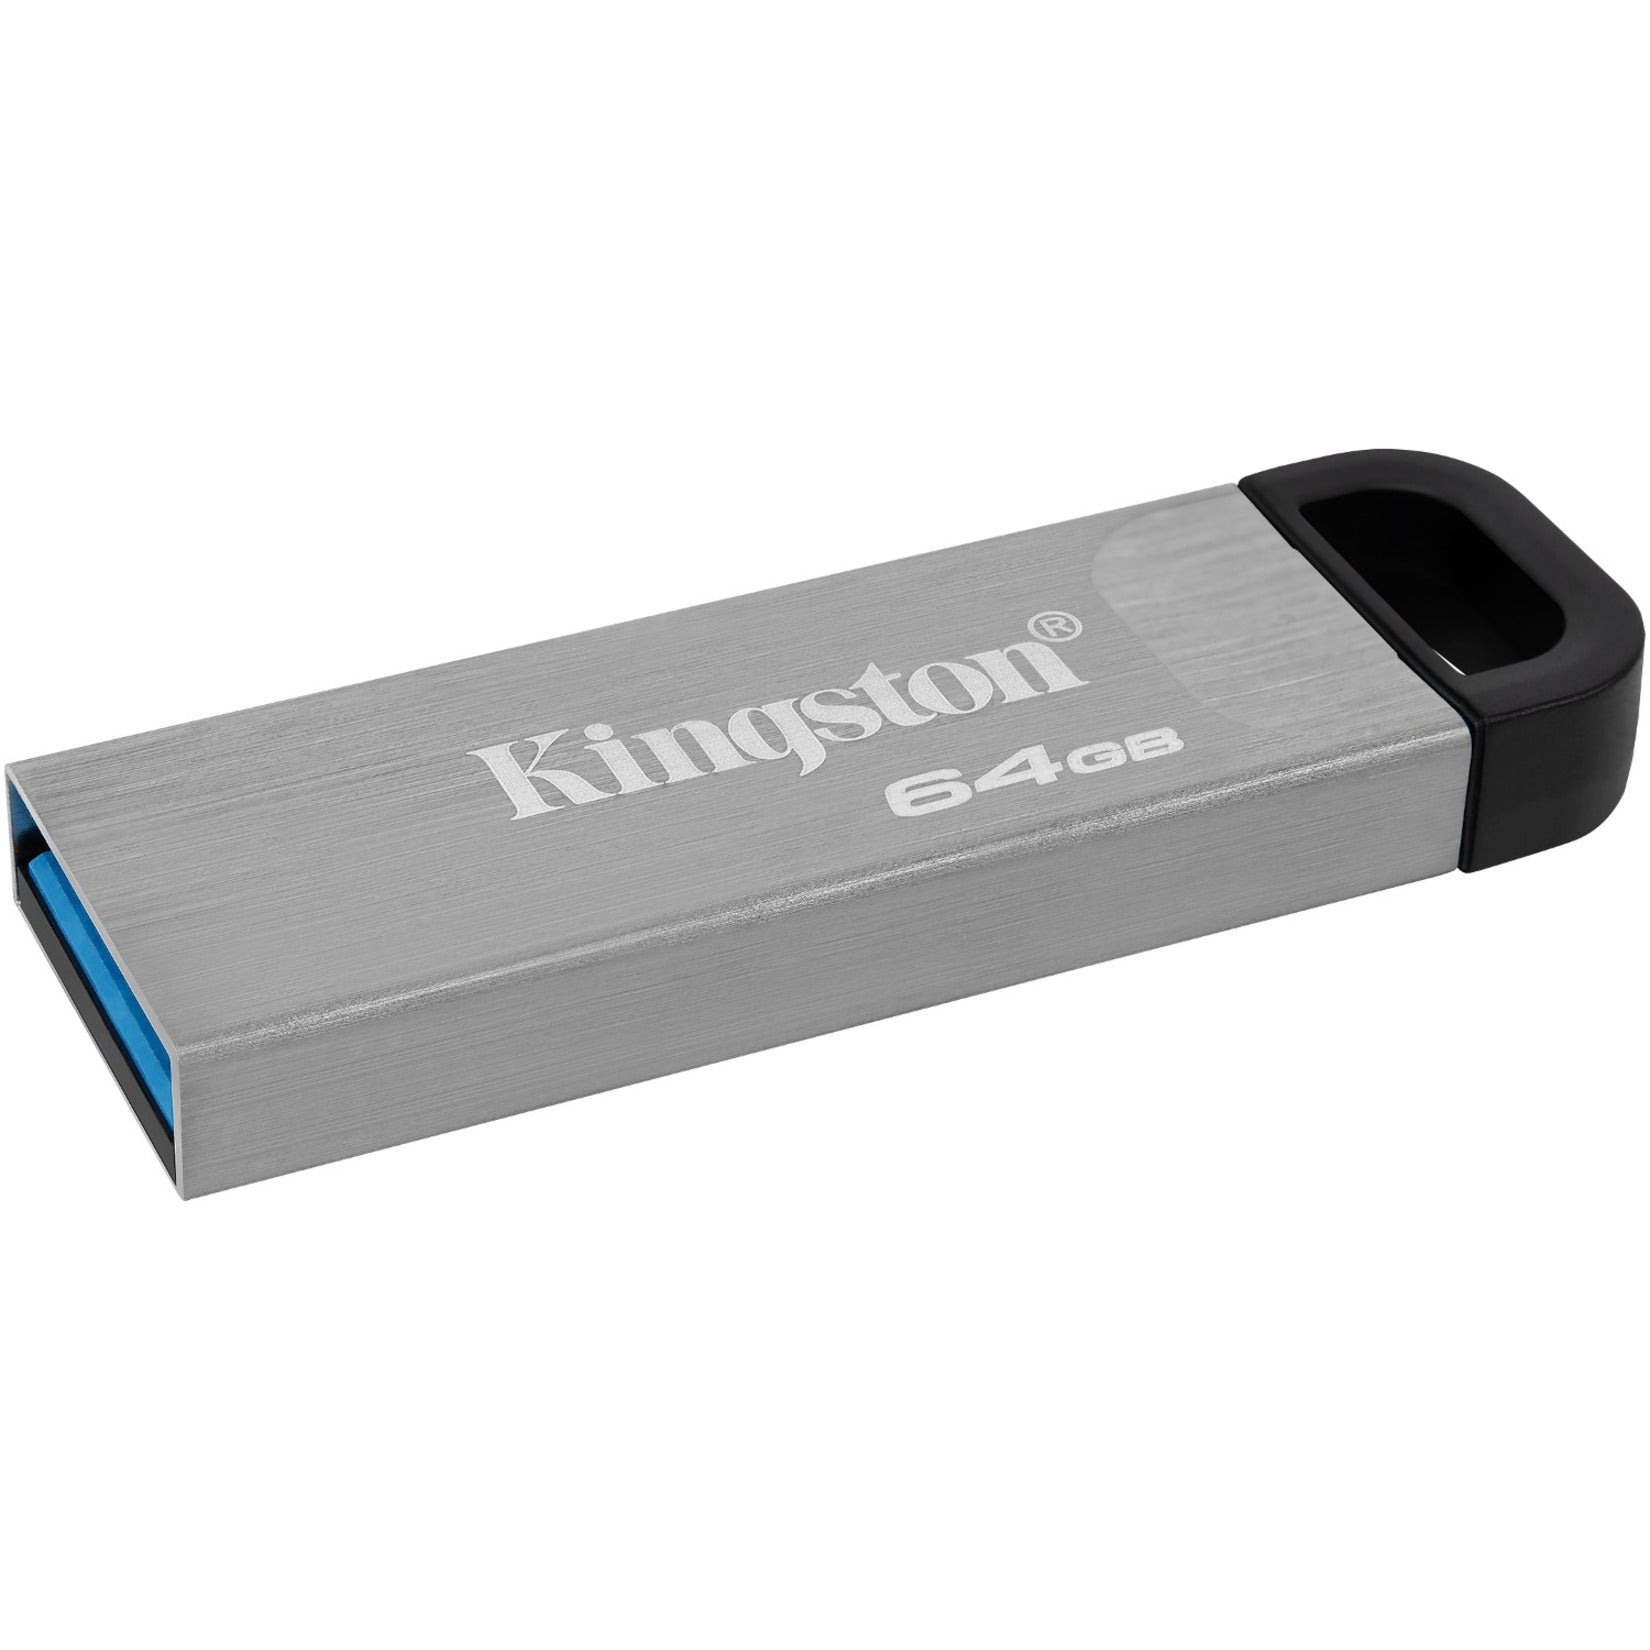 金士顿 DTKN/64GB 数据旅行者凯森 64GB USB 3.2 (Gen 1) A型闪存驱动器，轻巧，无盖，银色 金士顿 金士顿